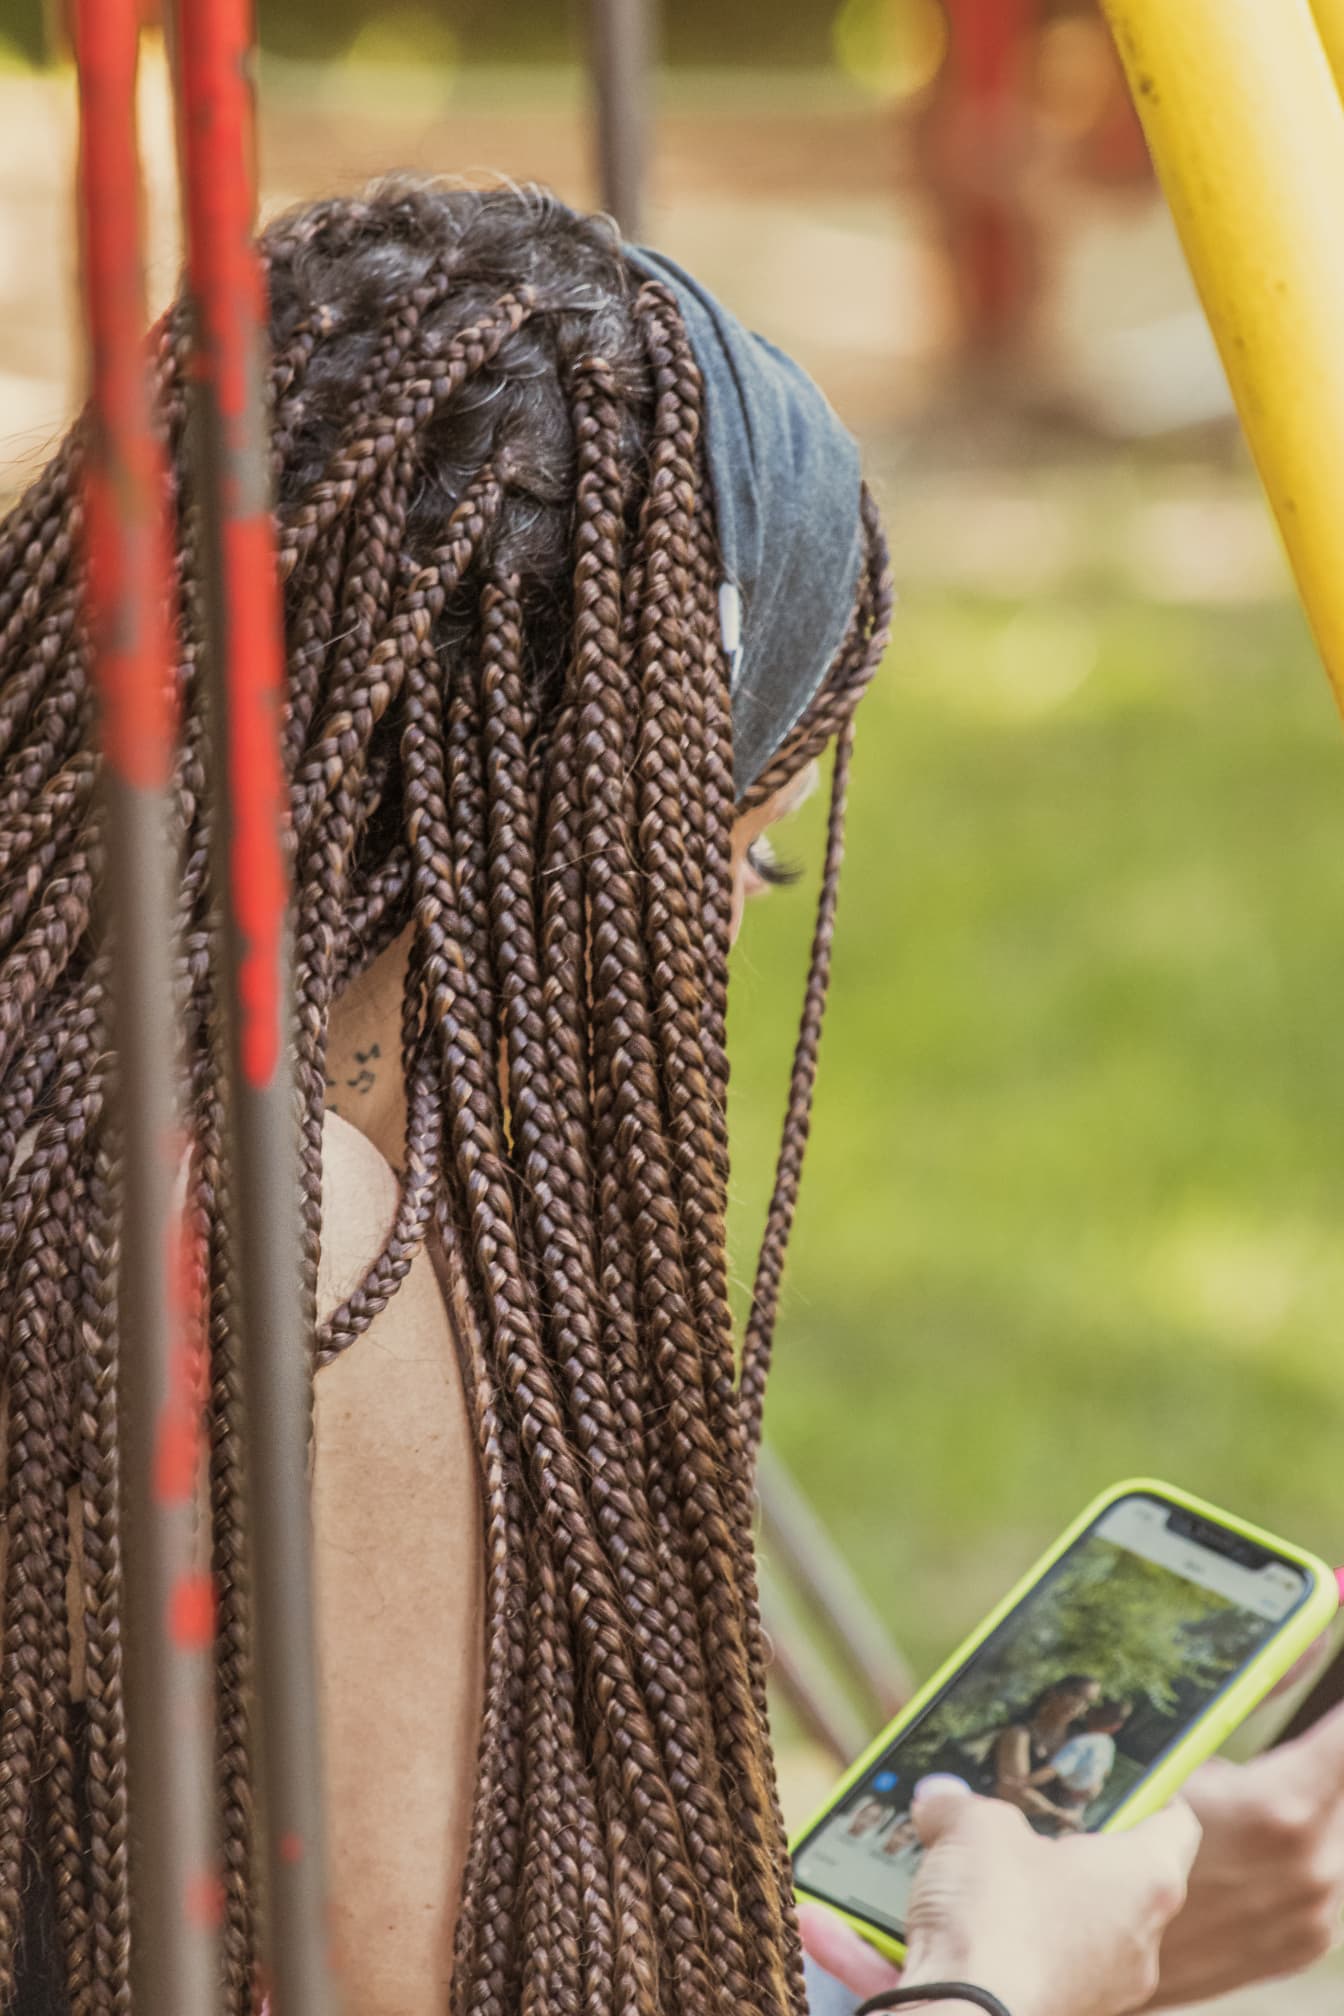 Yong brunette kvinde med fletninger frisure holder mobiltelefon